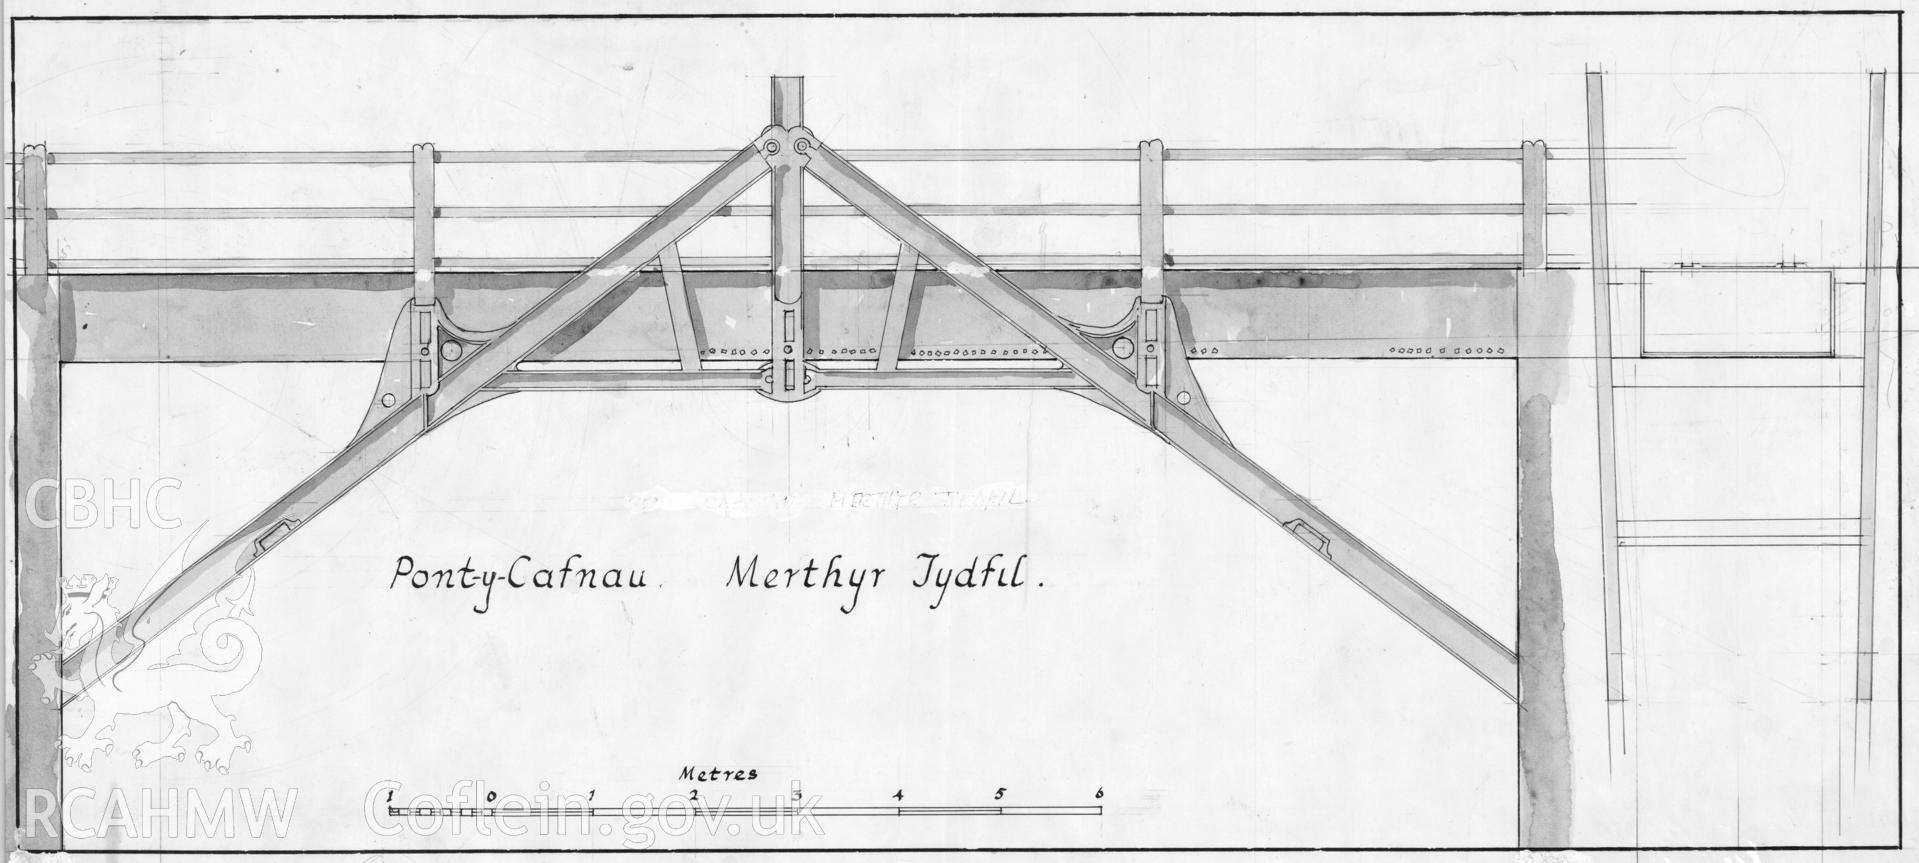 RCAHMW drawing by Douglas Hague, showing elevation of Pont y Cafnau, Merthyr Tydfil.